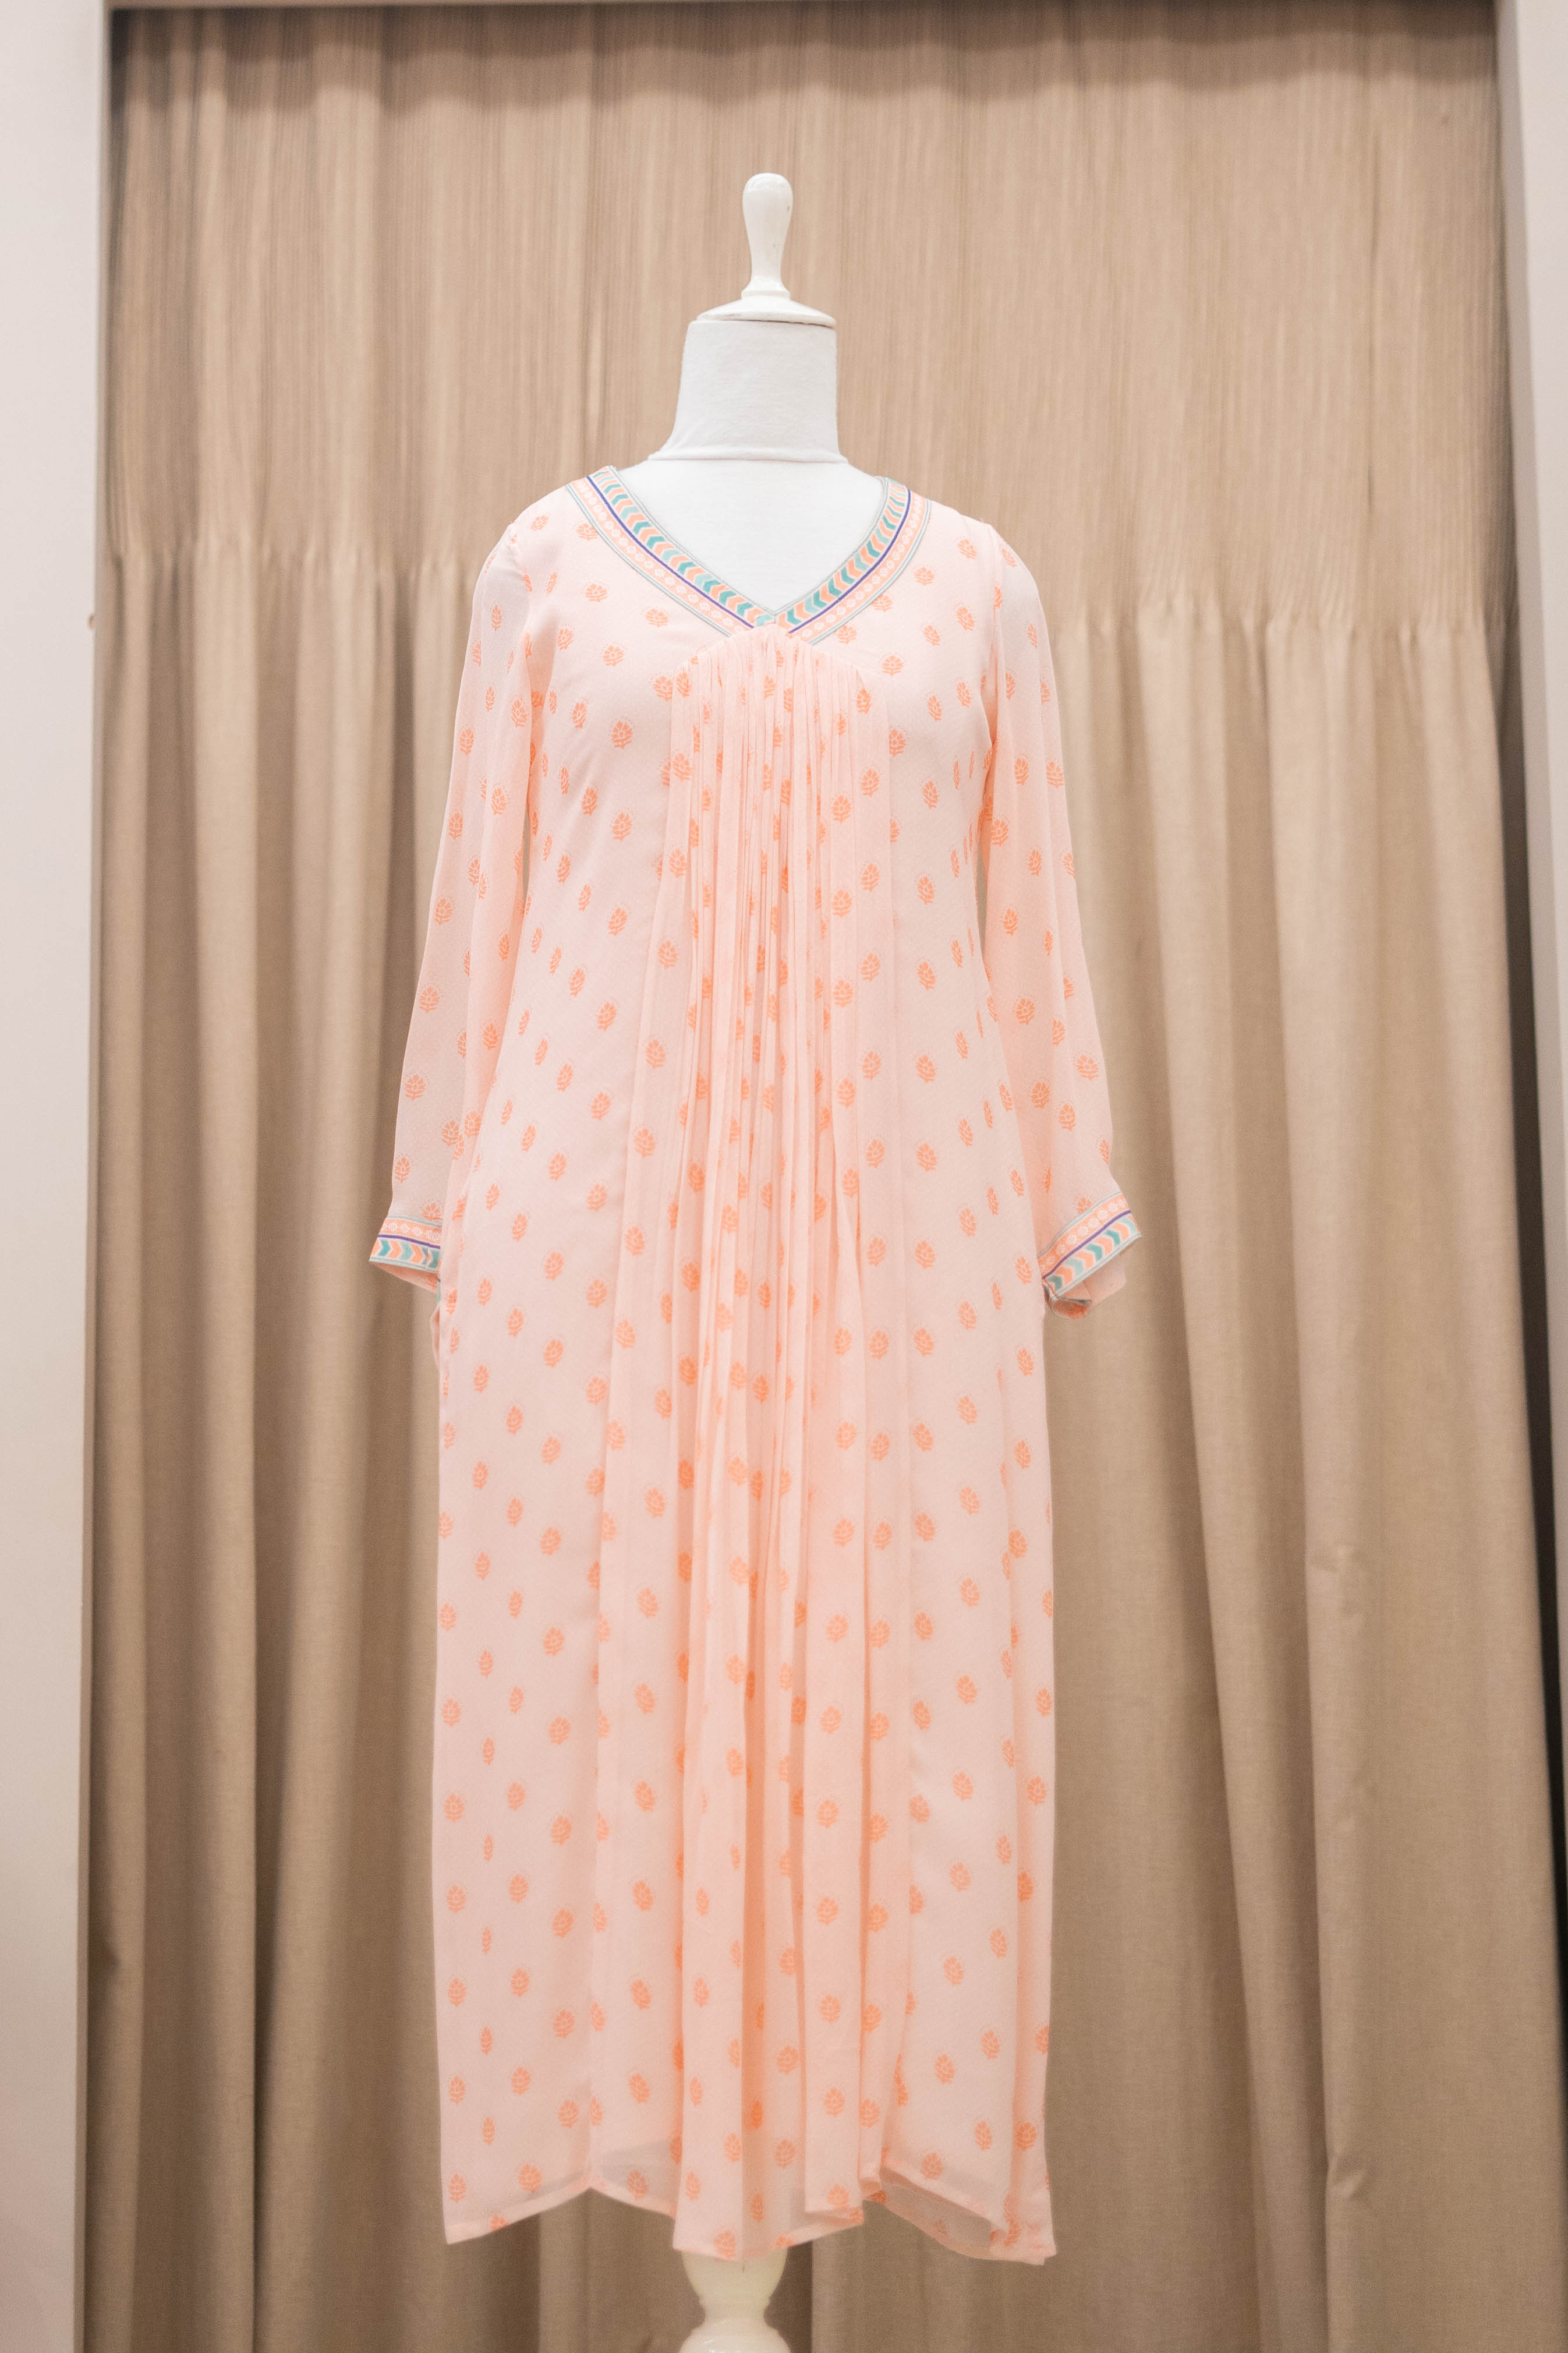 DS - peach floral dress